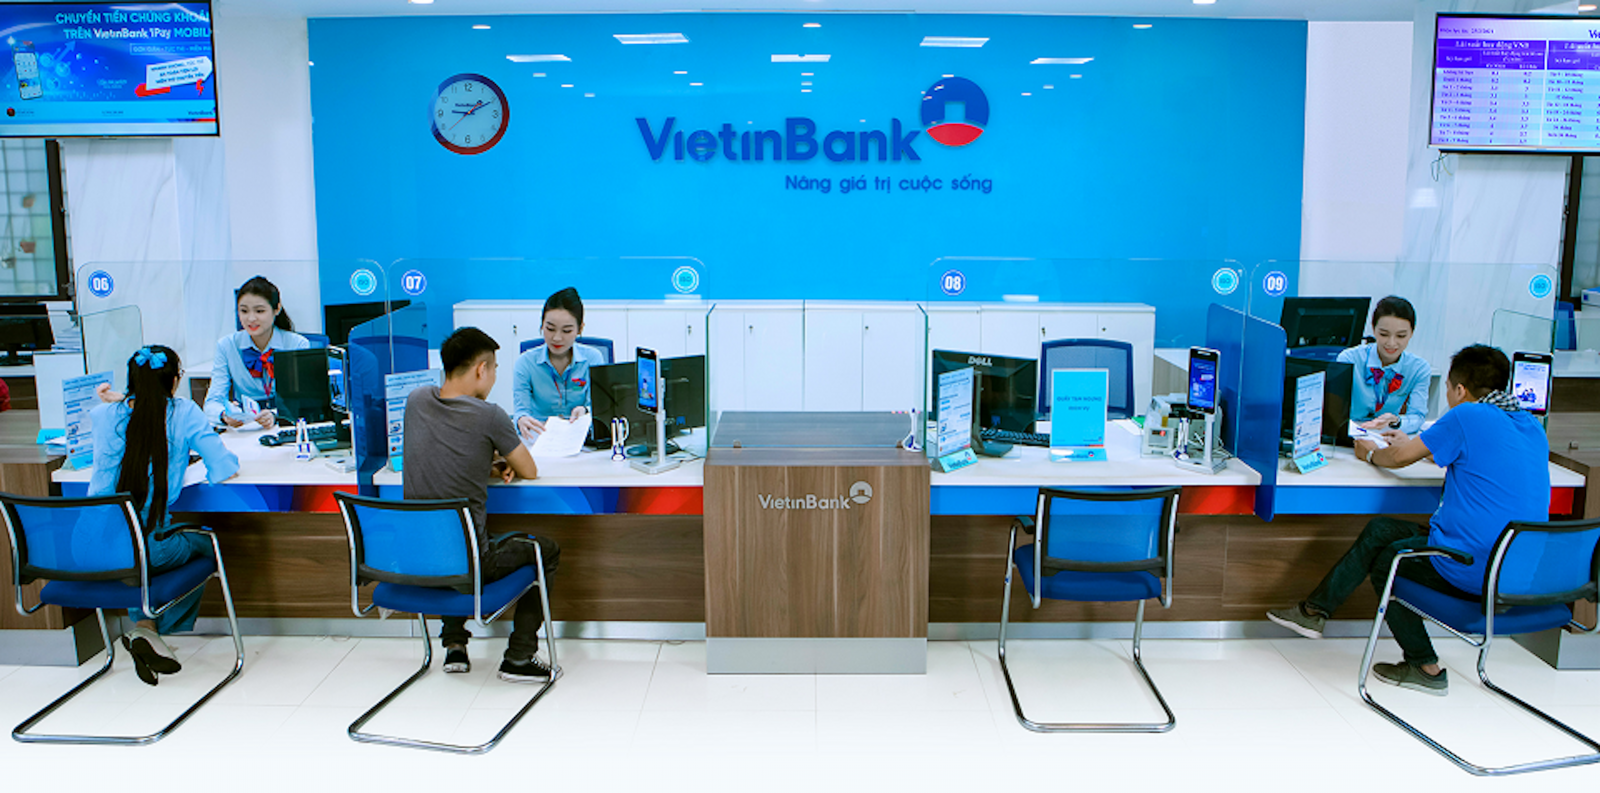 VietinBank đã vinh dự nhận giải thưởng “Thương vụ tài trợ dự án về cơ sở hạ tầng của năm” tại Giải thưởng Ngân hàng Doanh nghiệp và Đầu tư năm 2022 của The Asian Banking & Finance. Đây là thương vụ tài trợ dự án quan trọng xoay quanh việc mở rộng một khu công nghiệp hàng đầu Việt Nam, dự kiến thu hút lượng vốn đầu tư nước ngoài lớn và tạo ra hàng nghìn việc làm mới tại một khu kinh tế mới nổi trọng điểm của Việt Nam.